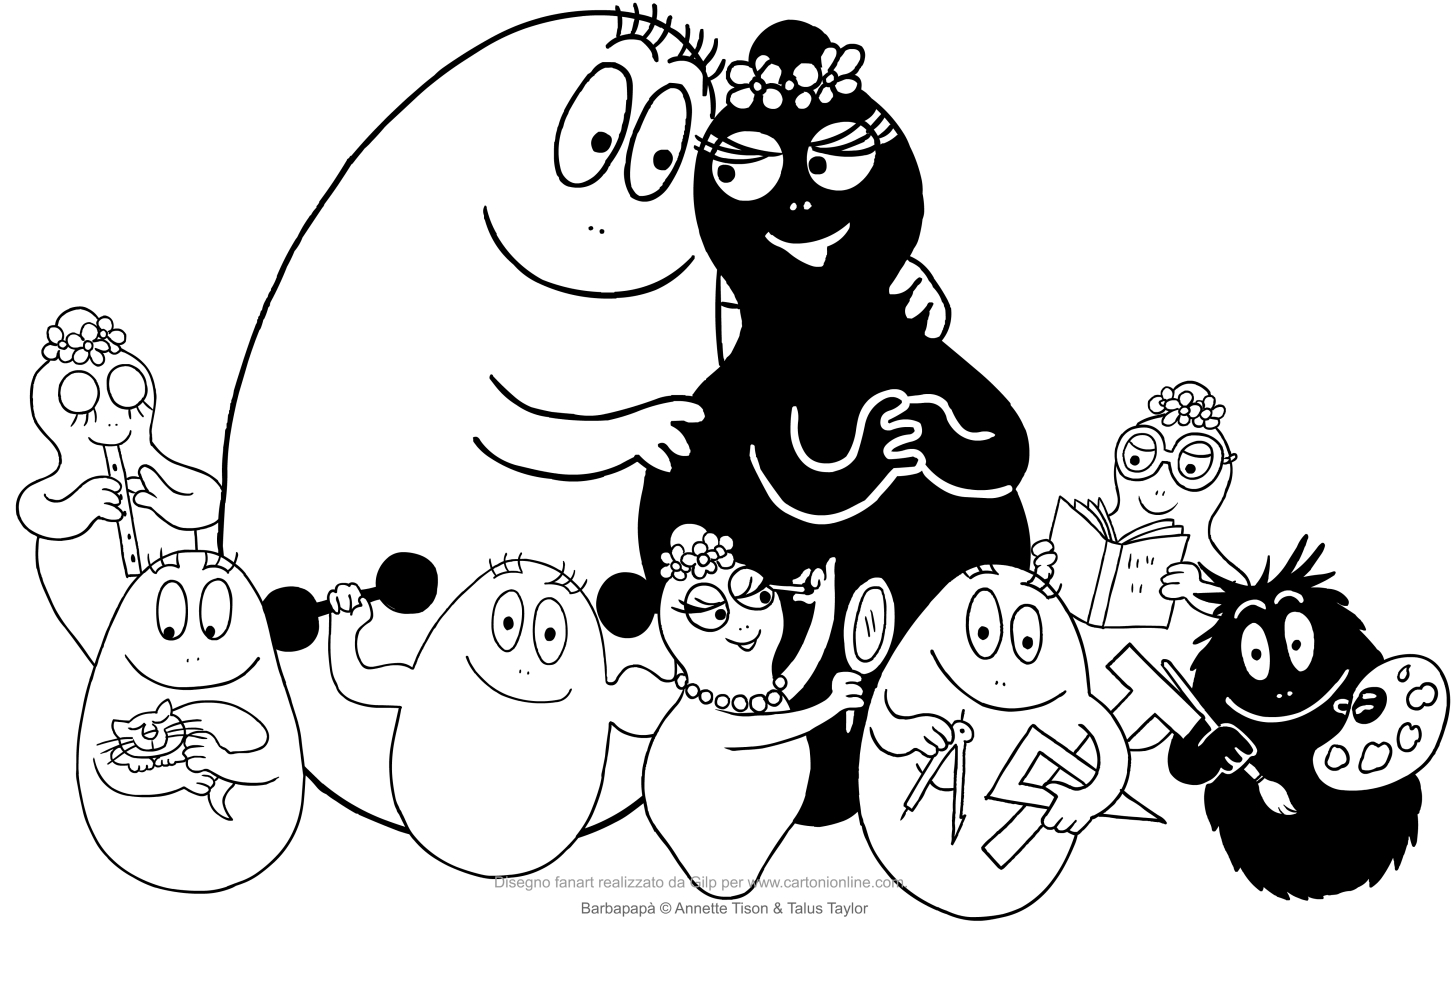 Barbapapà family coloring page to print